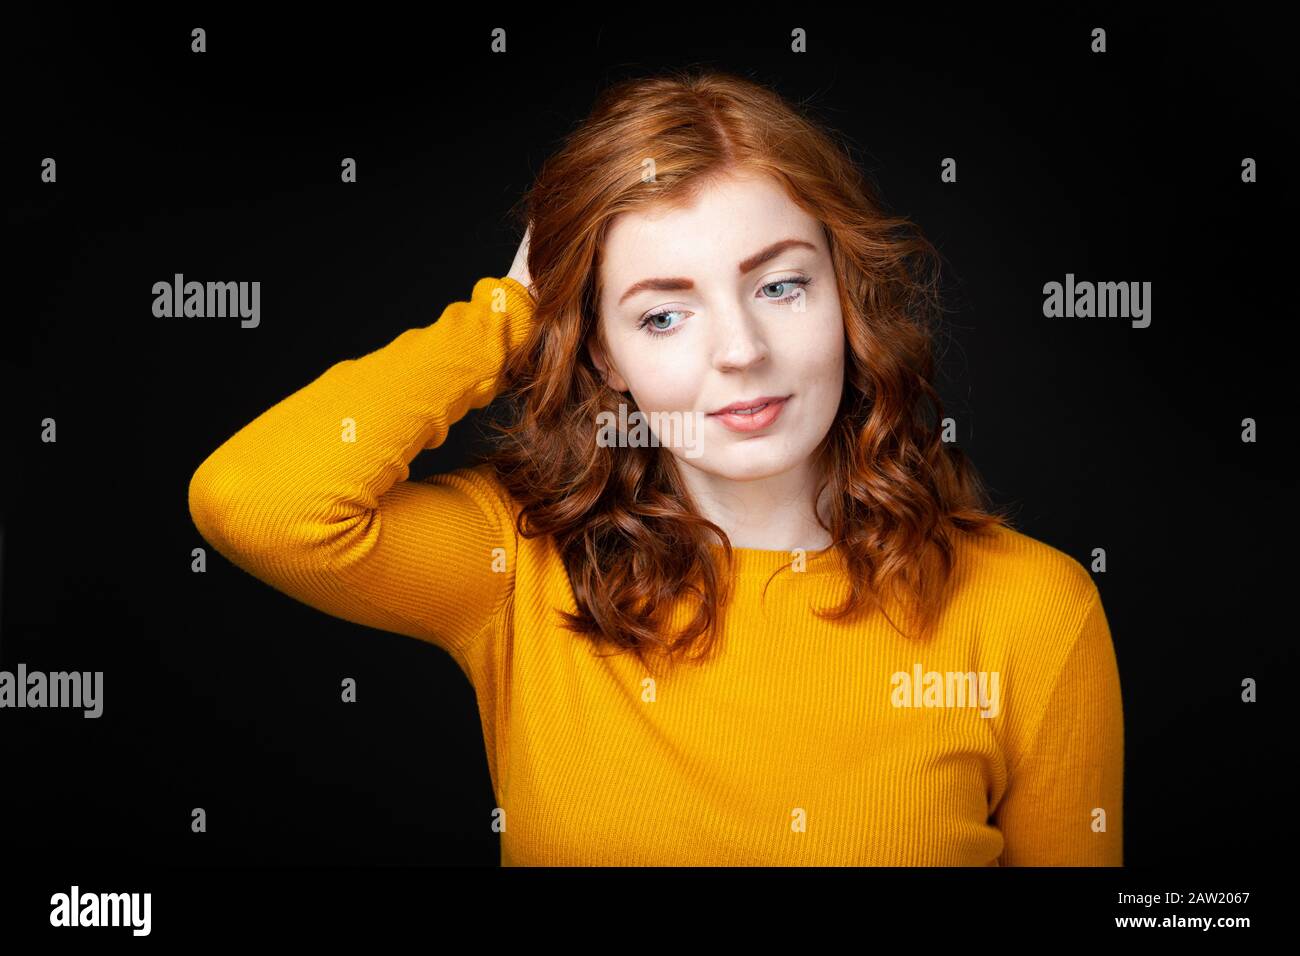 Ritratto di una bella donna con testa rossa che guarda lontano dalla fotocamera. Foto Stock